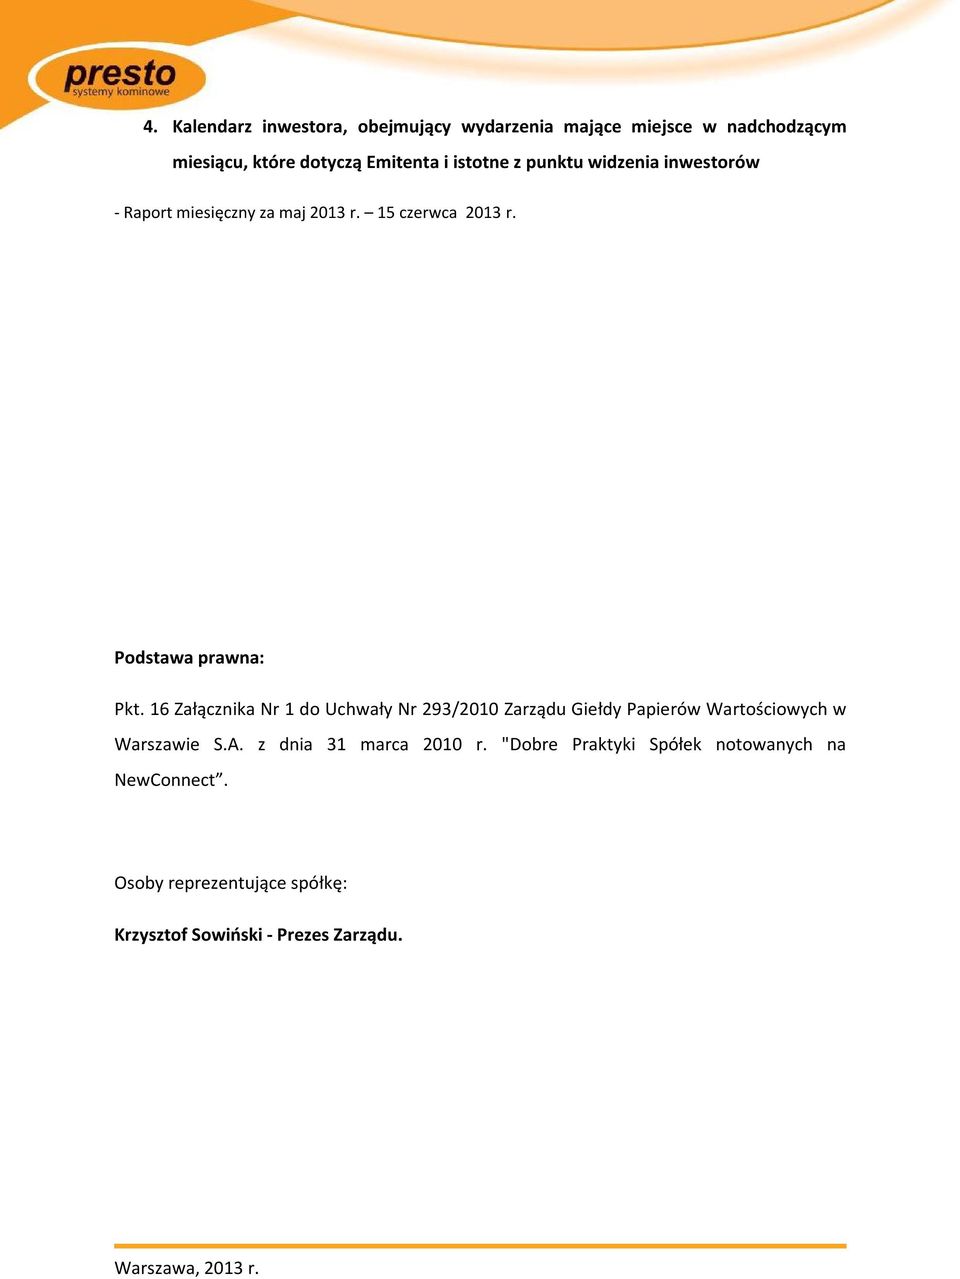 16 Załącznika Nr 1 do Uchwały Nr 293/2010 Zarządu Giełdy Papierów Wartościowych w Warszawie S.A.